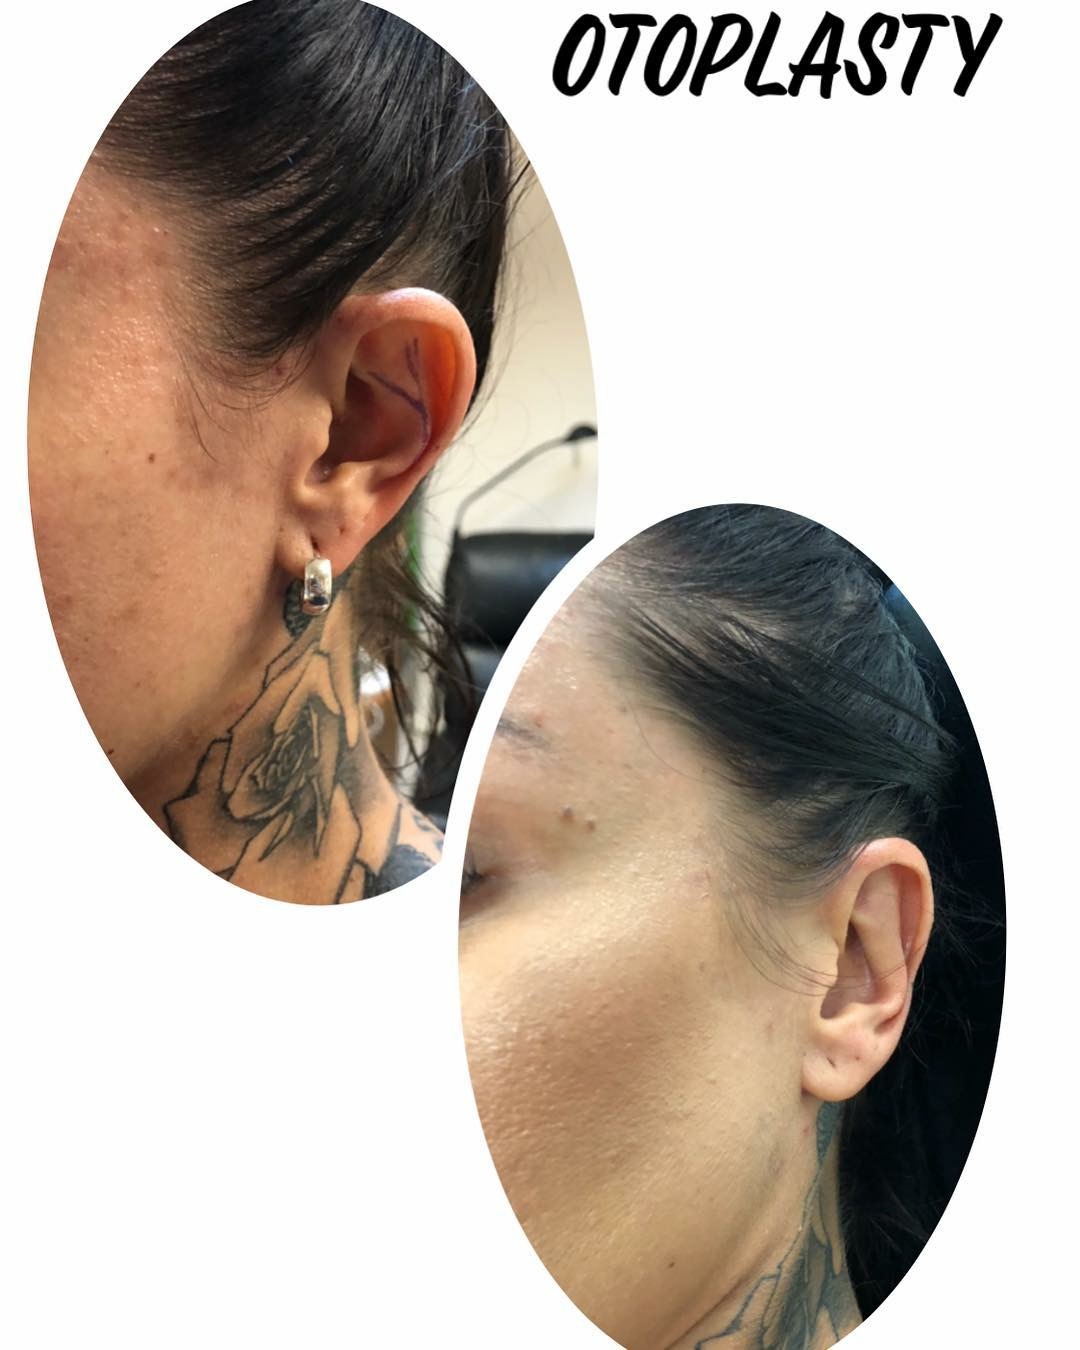 ear lobe repair brisbane